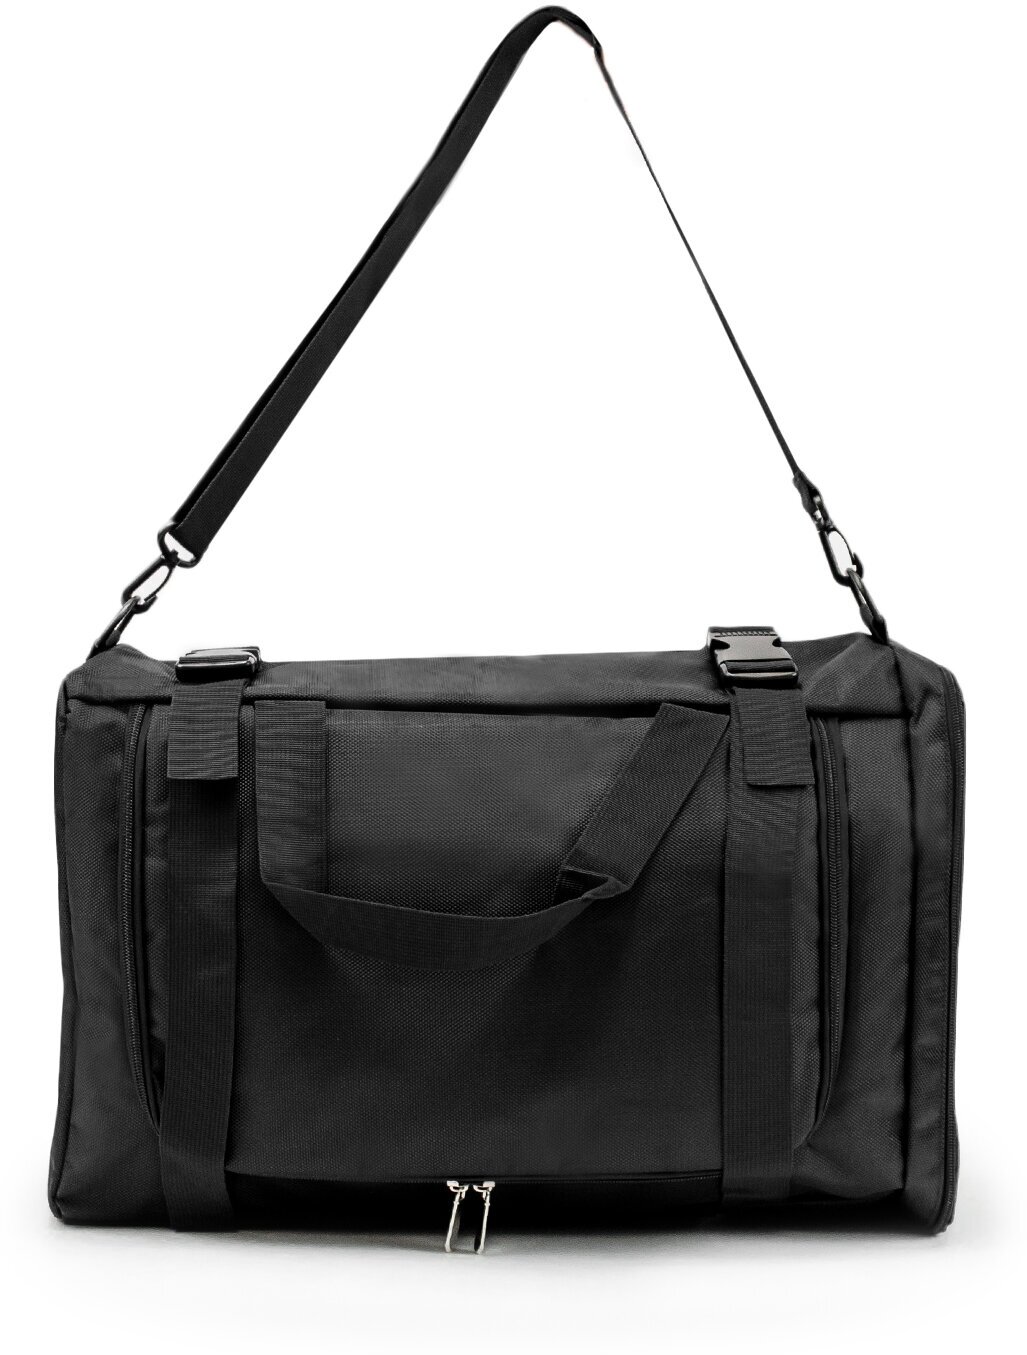 Рюкзак-спортивная сумка (22,5 л, черная) UrbanStorm трансформер большой размер для фитнеса, отдыха \ школьный для мальчиков, девочек - фотография № 10